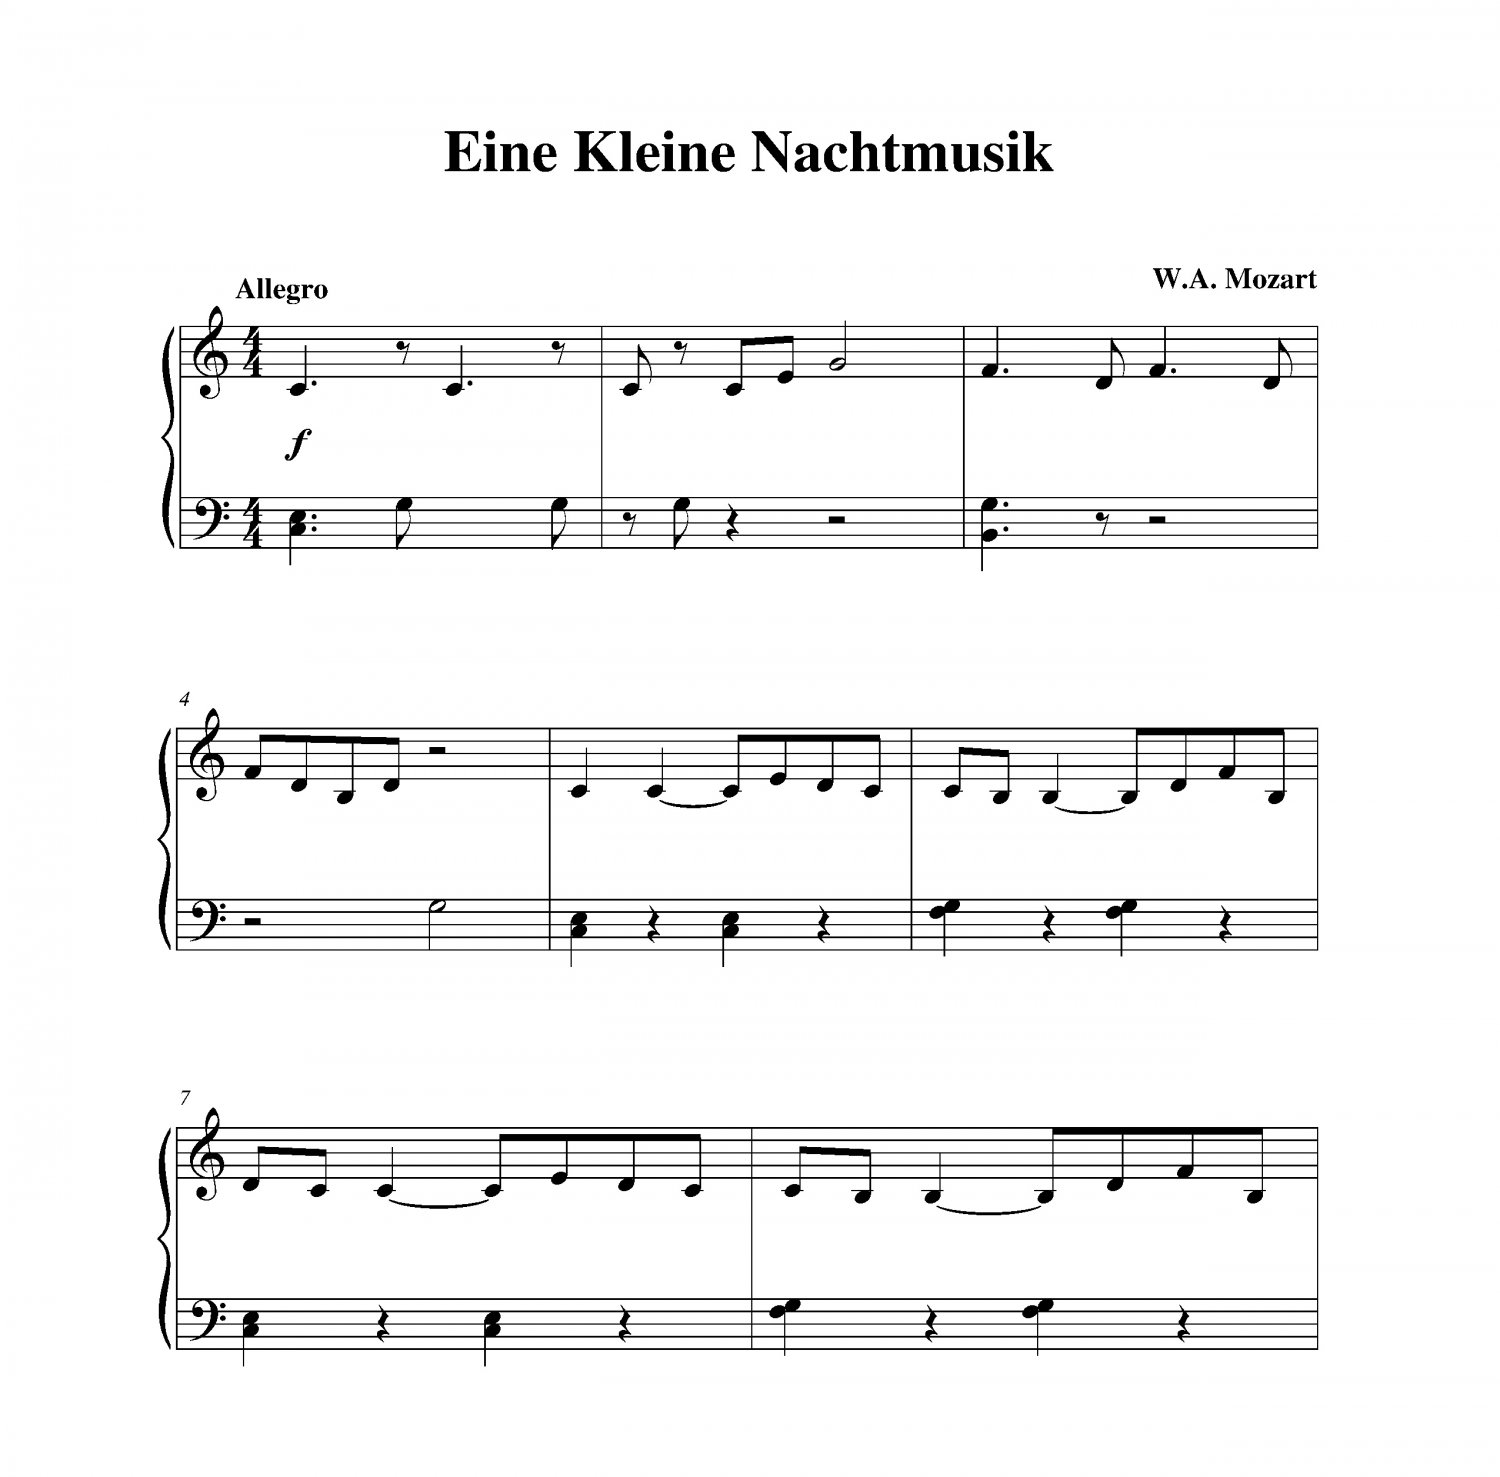 Mozart - Themes from “Eine Kleine Nachtmusik” piano sheet music Late Beginn...